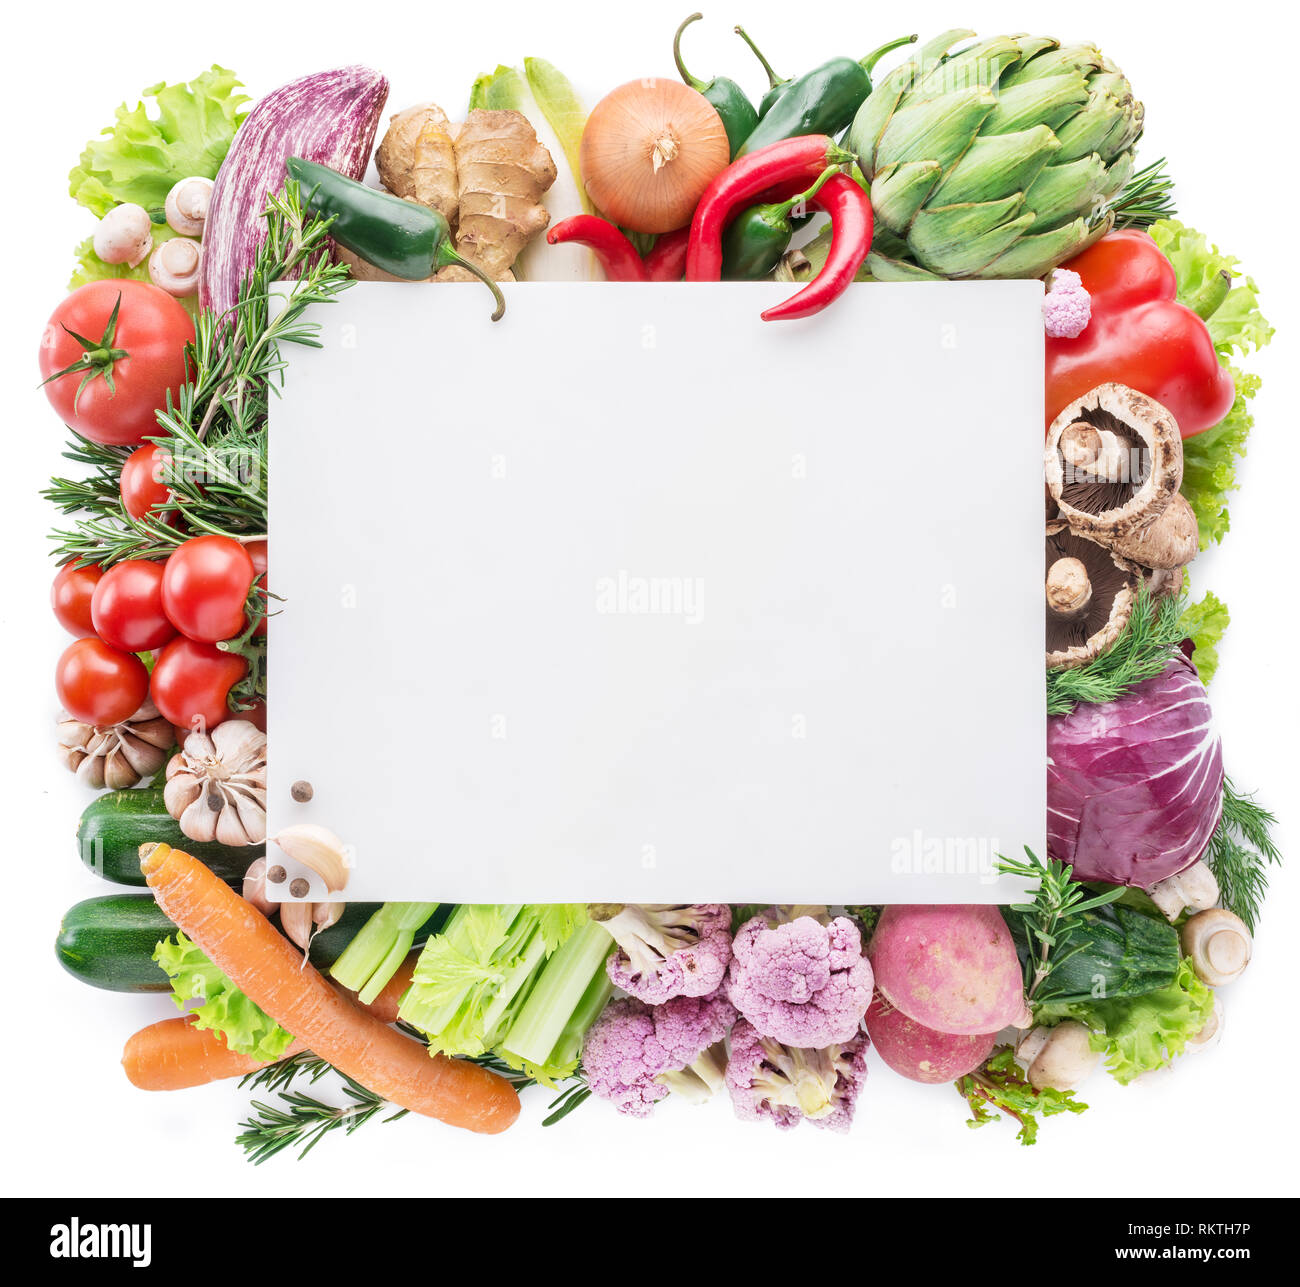 Verschiedene bunte Gemüse als Rahmen auf weißem Hintergrund angeordnet. Freier Platz für Ihren Text. Stockfoto